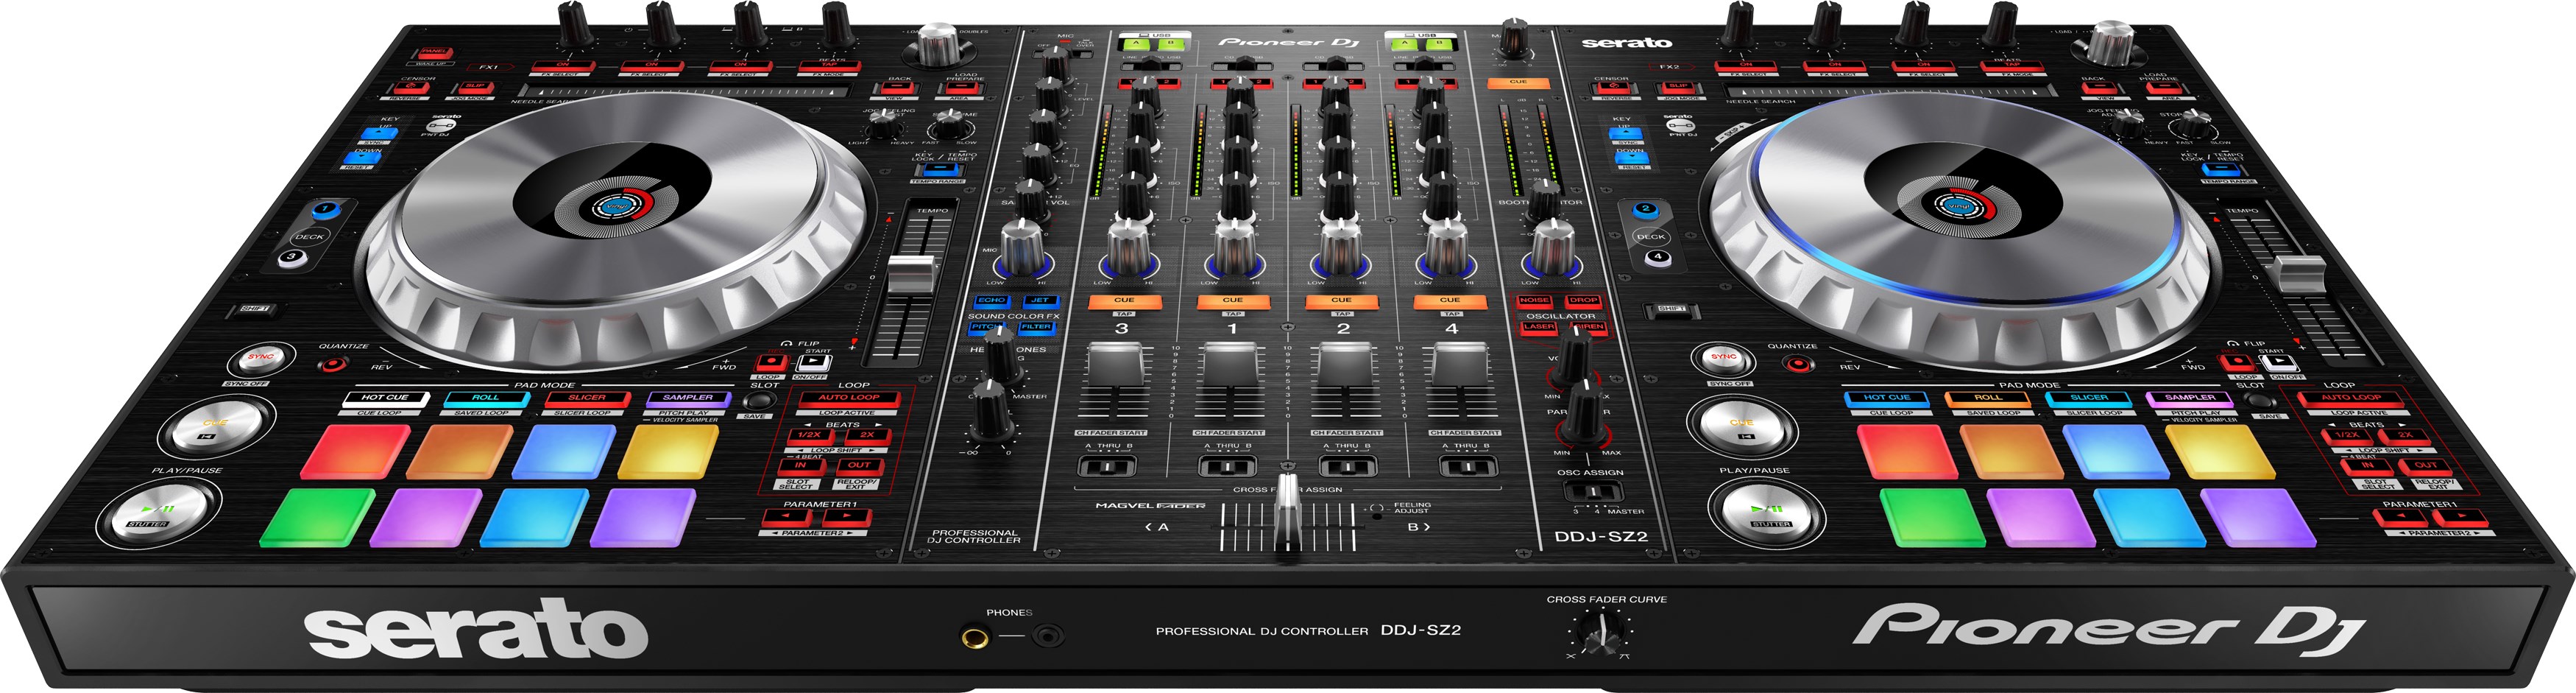 Pioneer Dj Ddj-sz2 - USB DJ controller - Variation 2